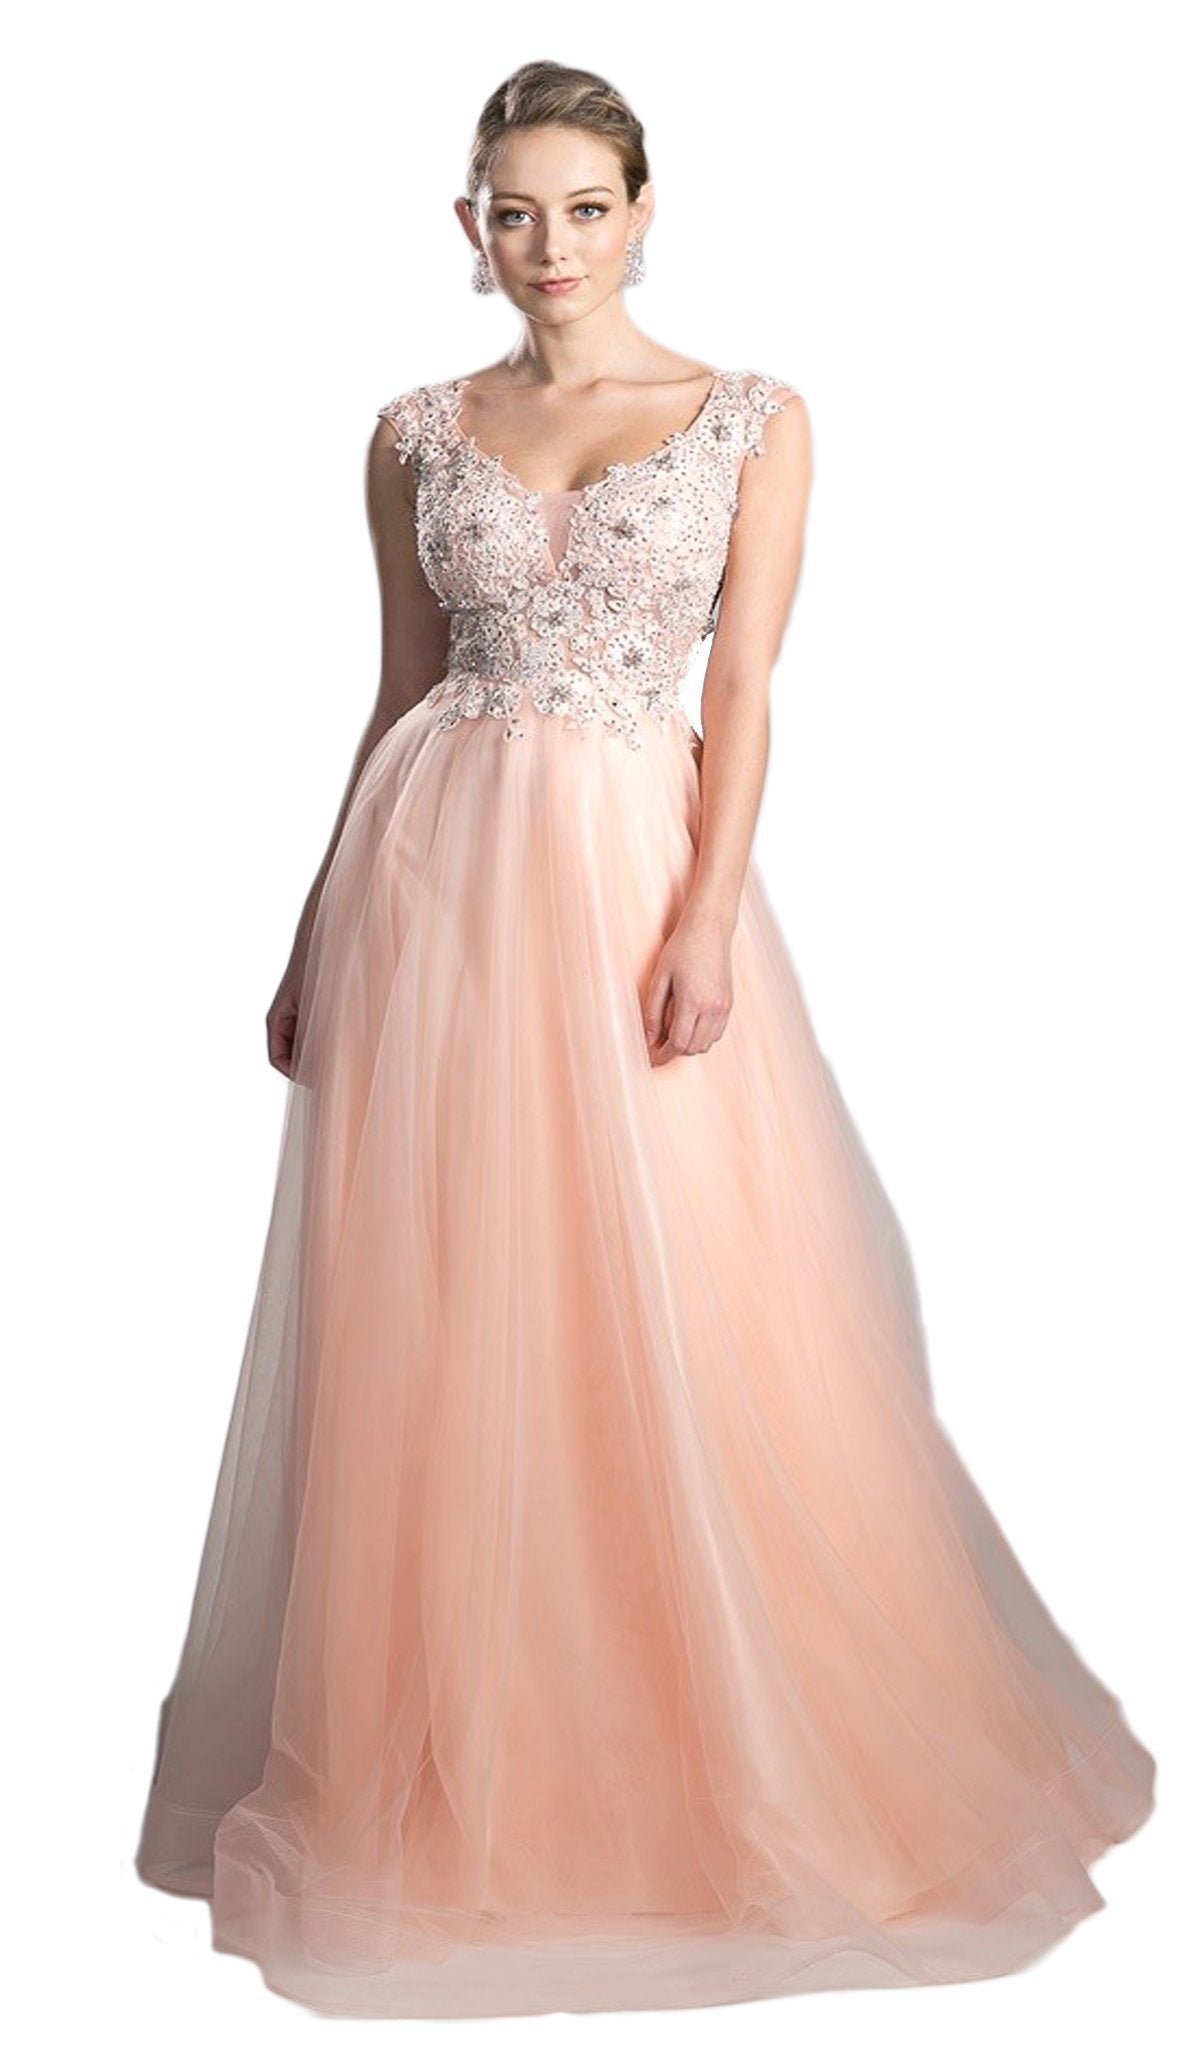 Cinderella Divine - KV1015 Embellished Scoop Neck A-line Dress Special Occasion Dress 2 / Peach